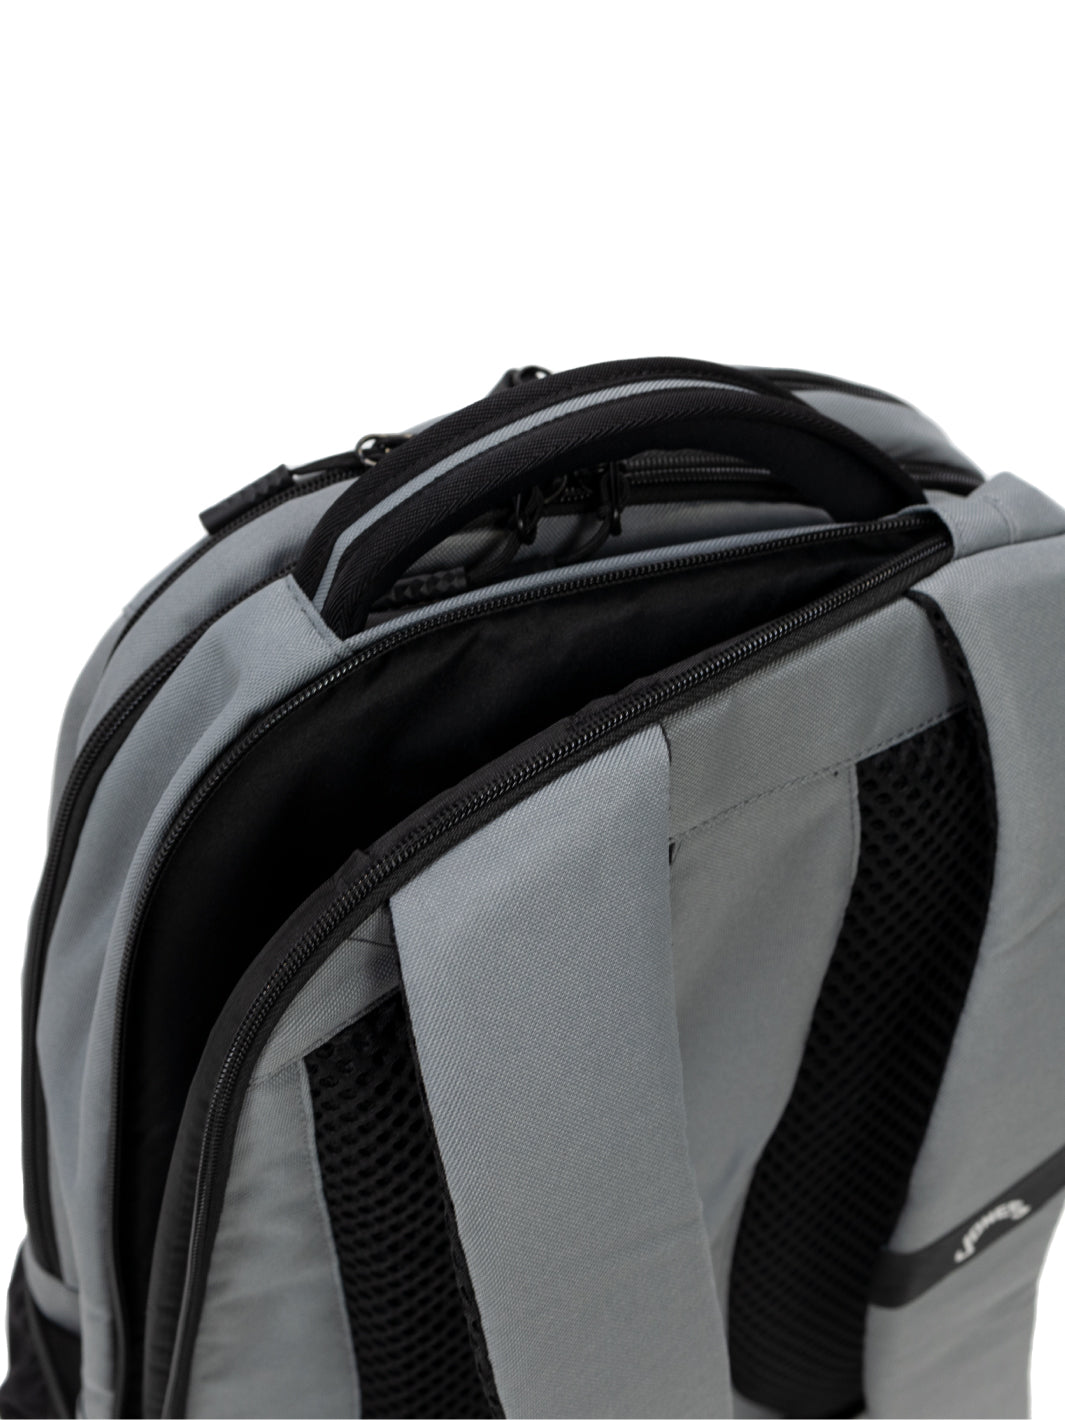 Jones A1 Backpack - Midtown Gray – Jones Golf Bags